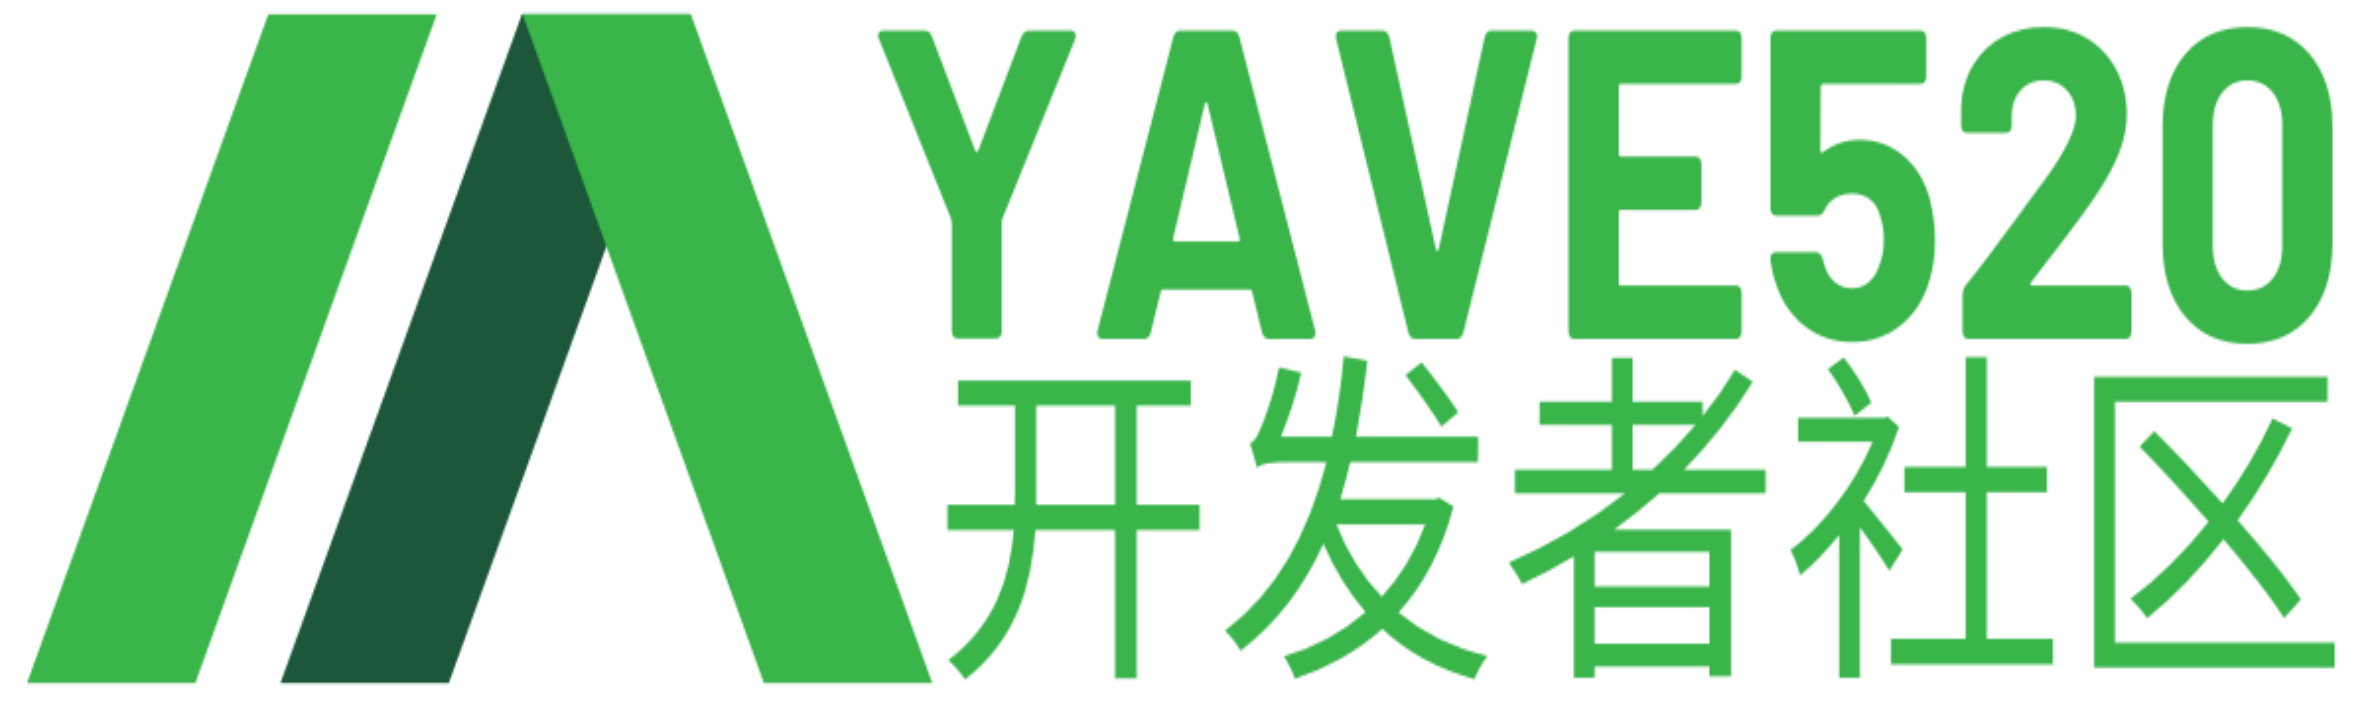 论坛首页-Yave520-专业开发者社区